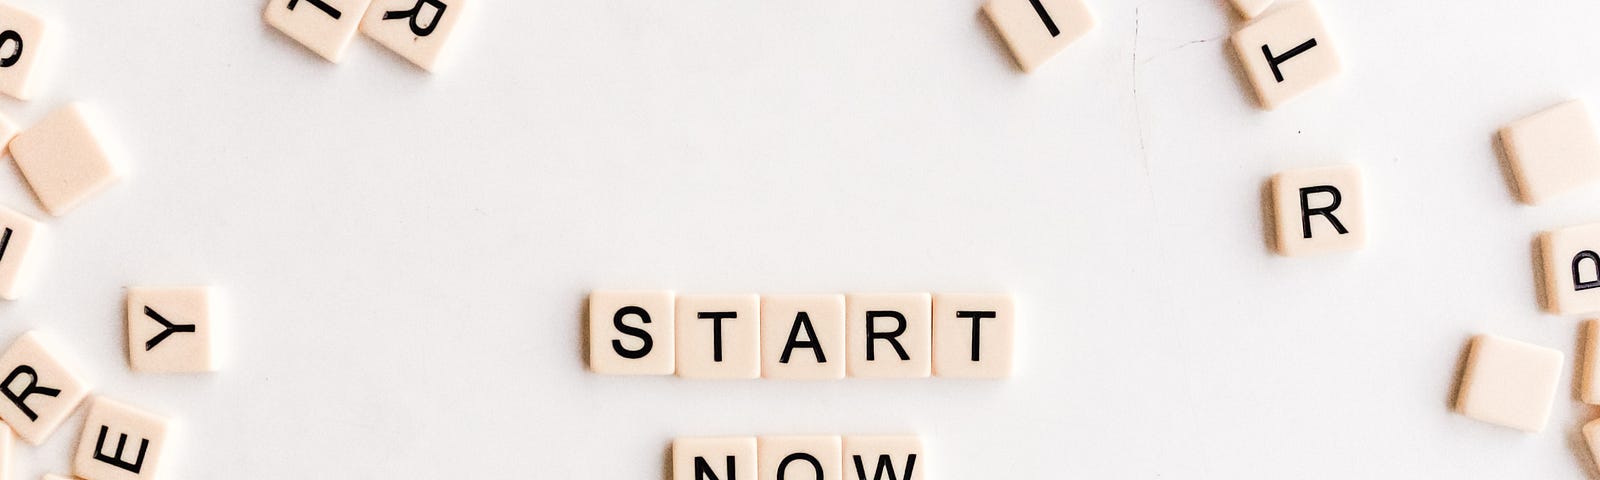 Scrabble letters spell “Start Now”